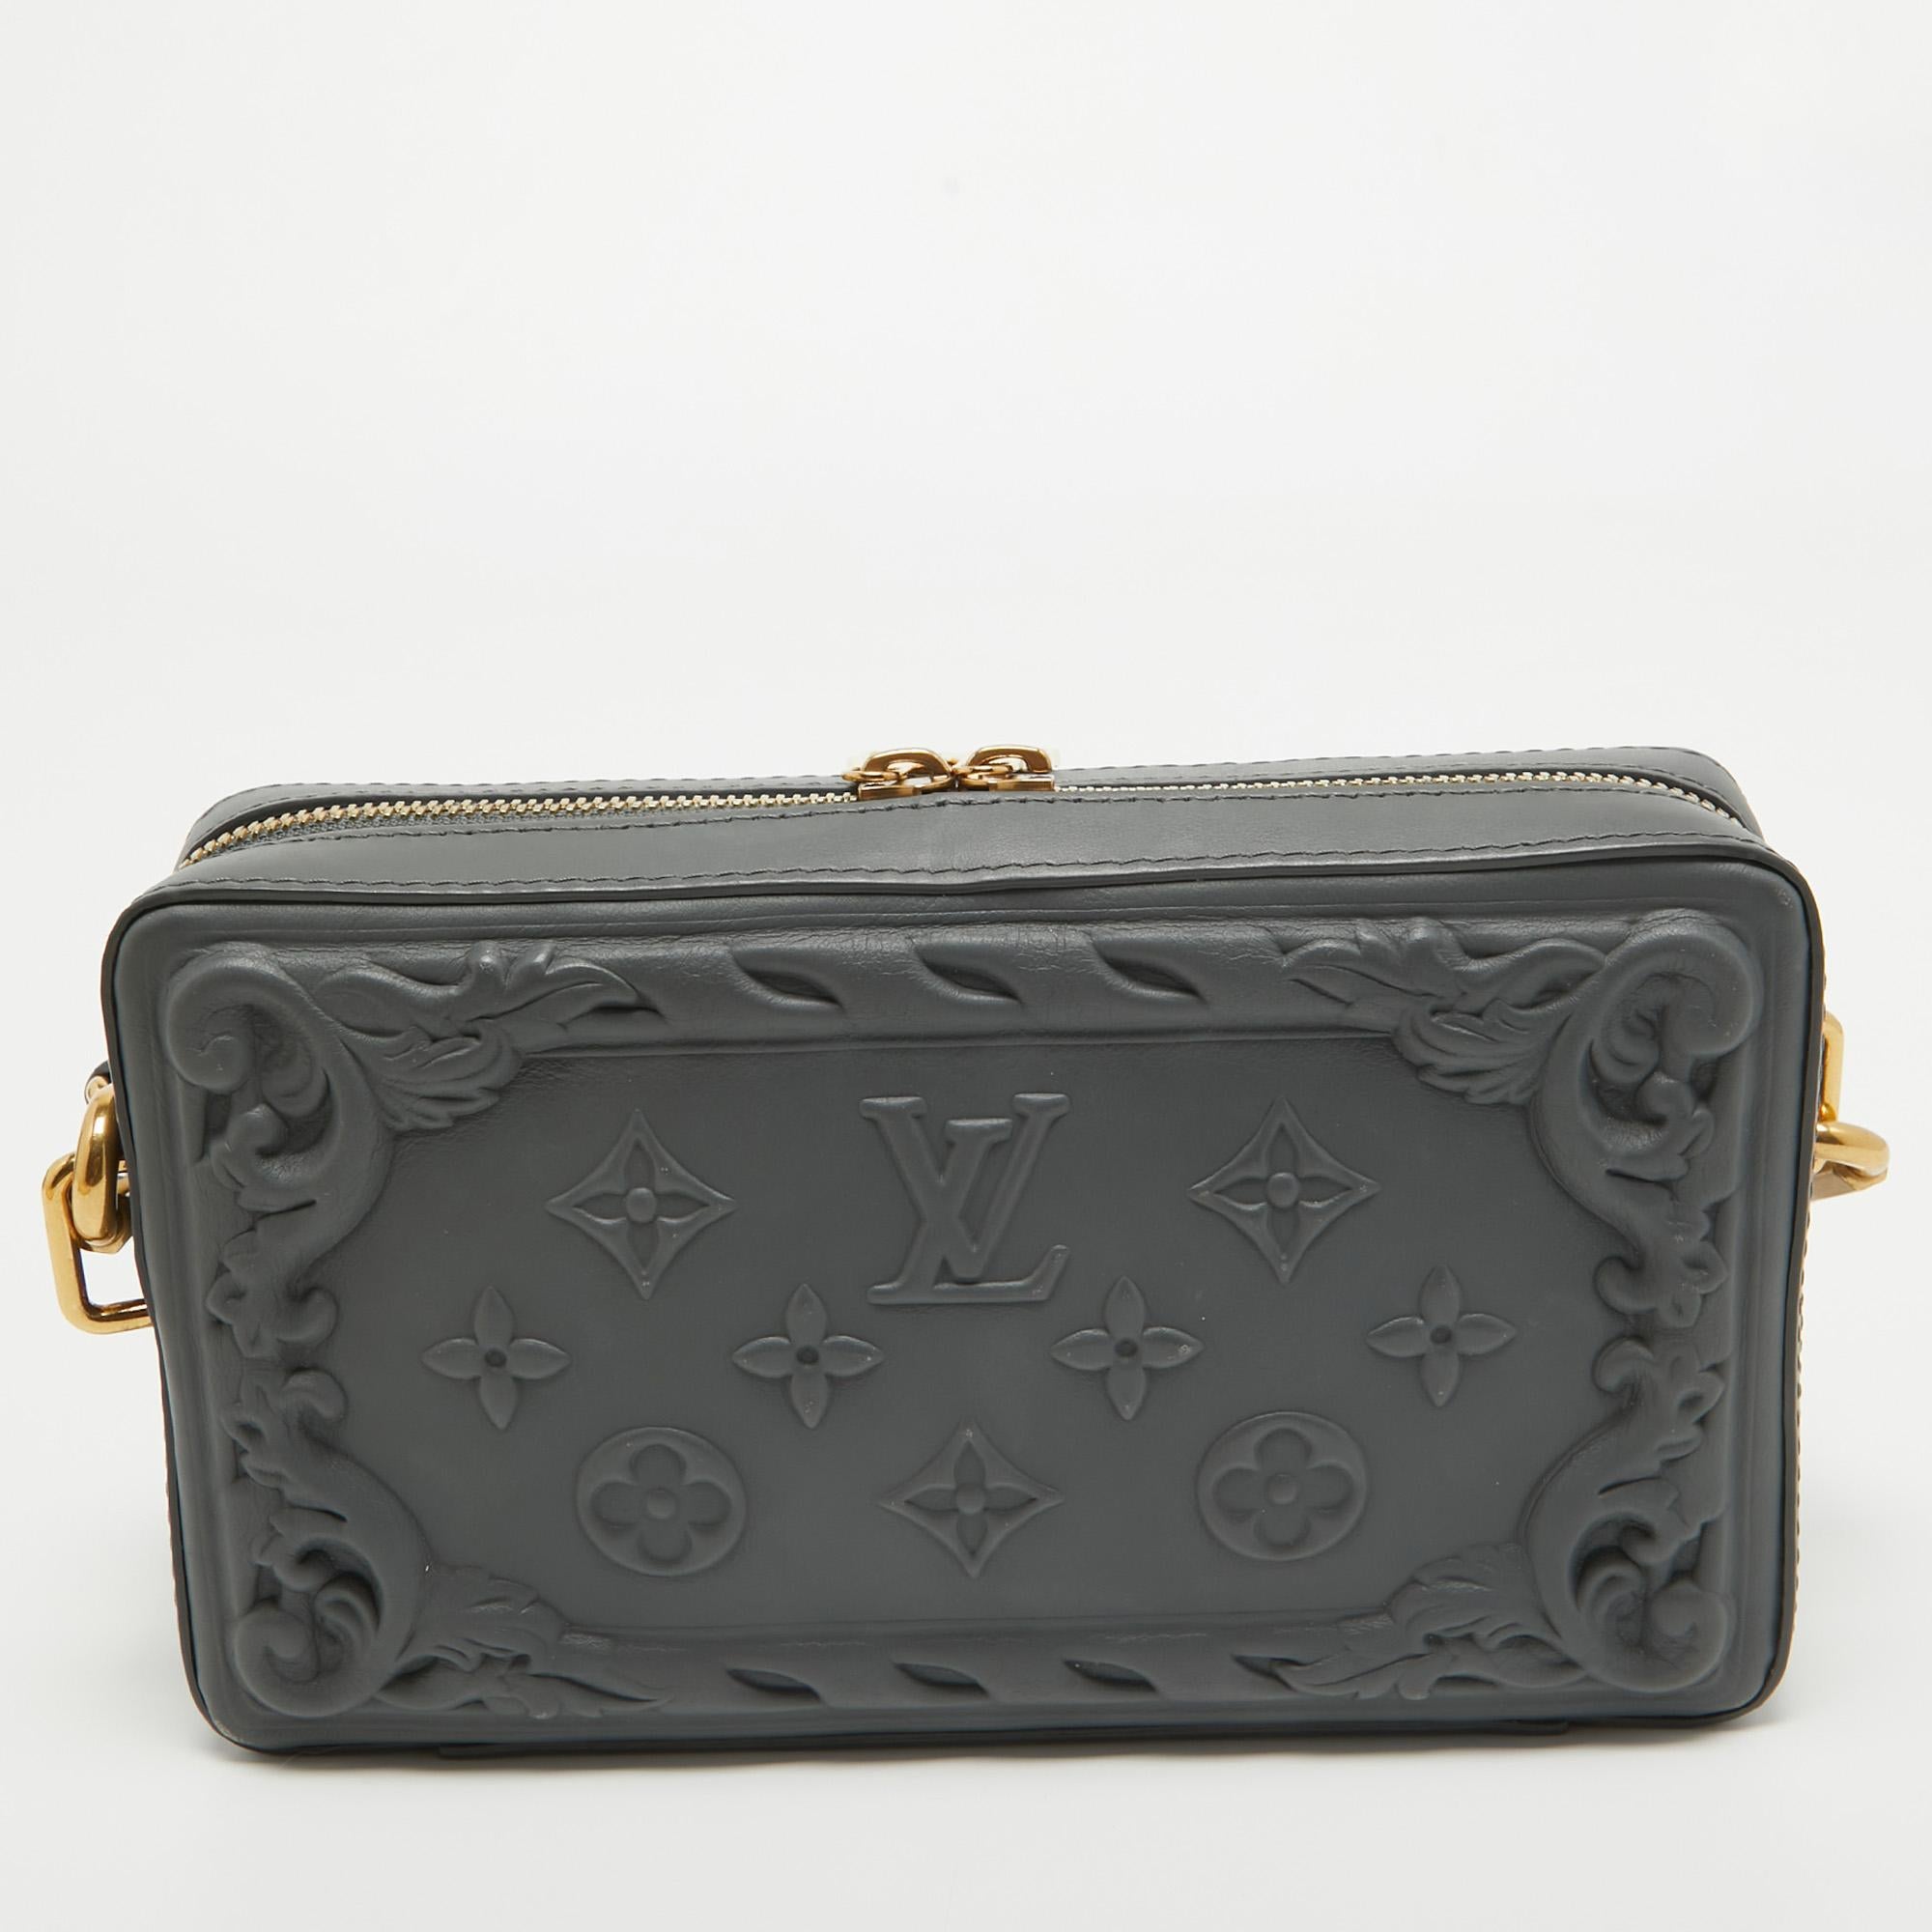 Le portefeuille portable Soft Trunk de Louis Vuitton est une beauté sous tous les angles. Il est conçu pour ressembler à une pièce d'accentuation, mais il est doté de fonctions pratiques pour que vous puissiez l'utiliser tous les jours. Il est de